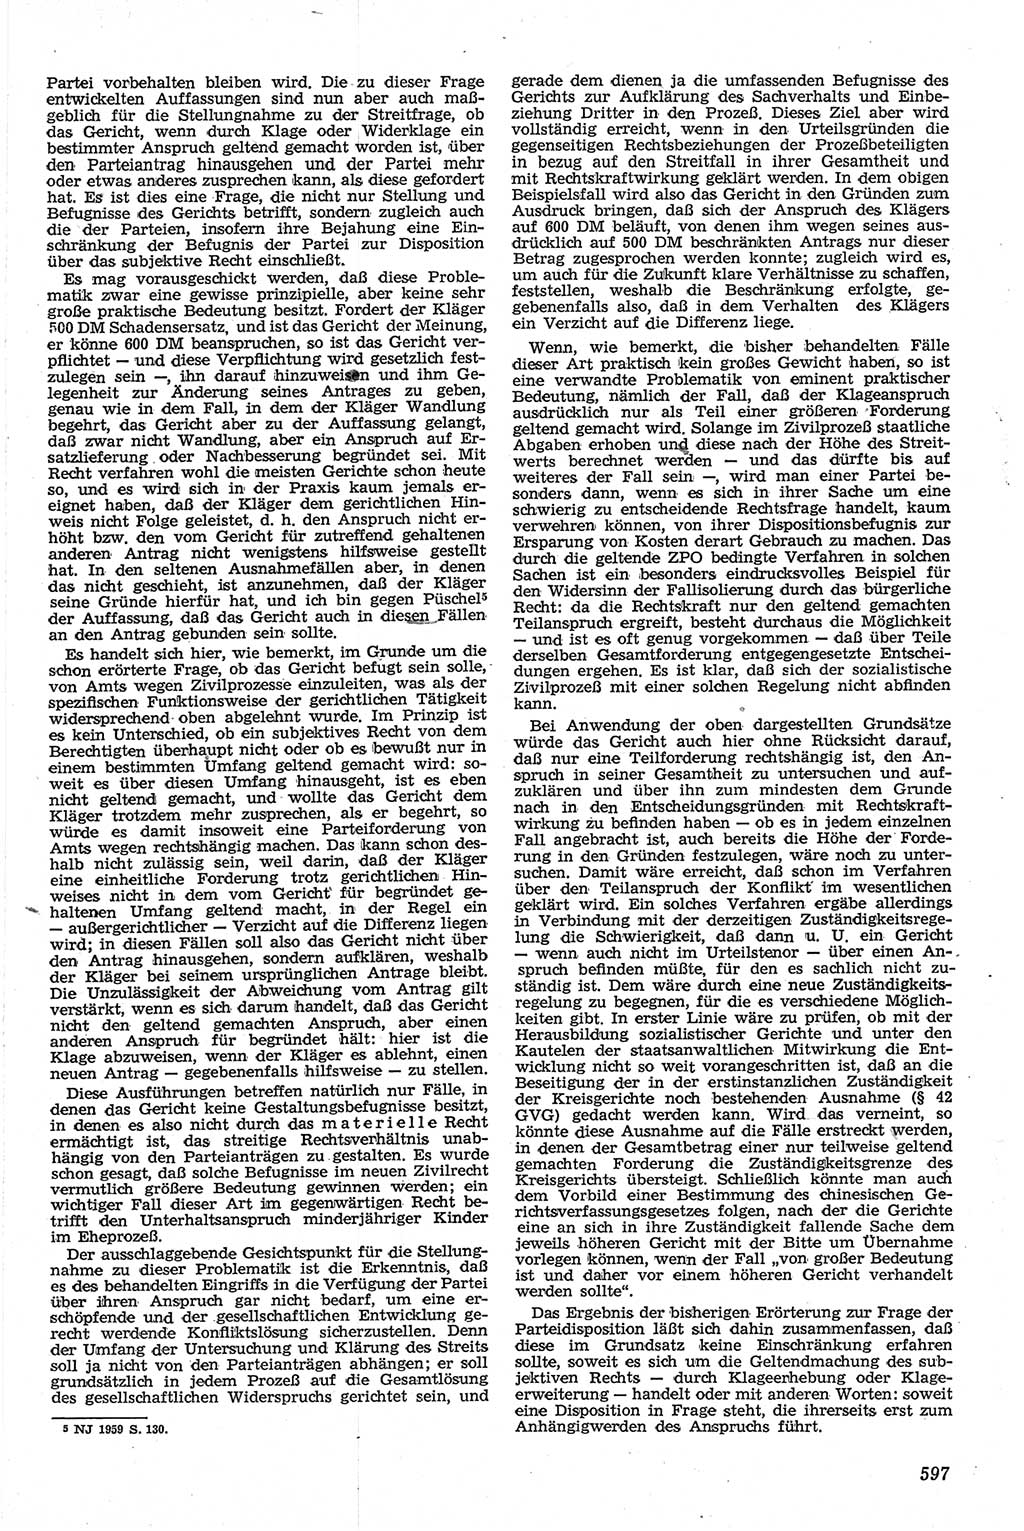 Neue Justiz (NJ), Zeitschrift für Recht und Rechtswissenschaft [Deutsche Demokratische Republik (DDR)], 13. Jahrgang 1959, Seite 597 (NJ DDR 1959, S. 597)